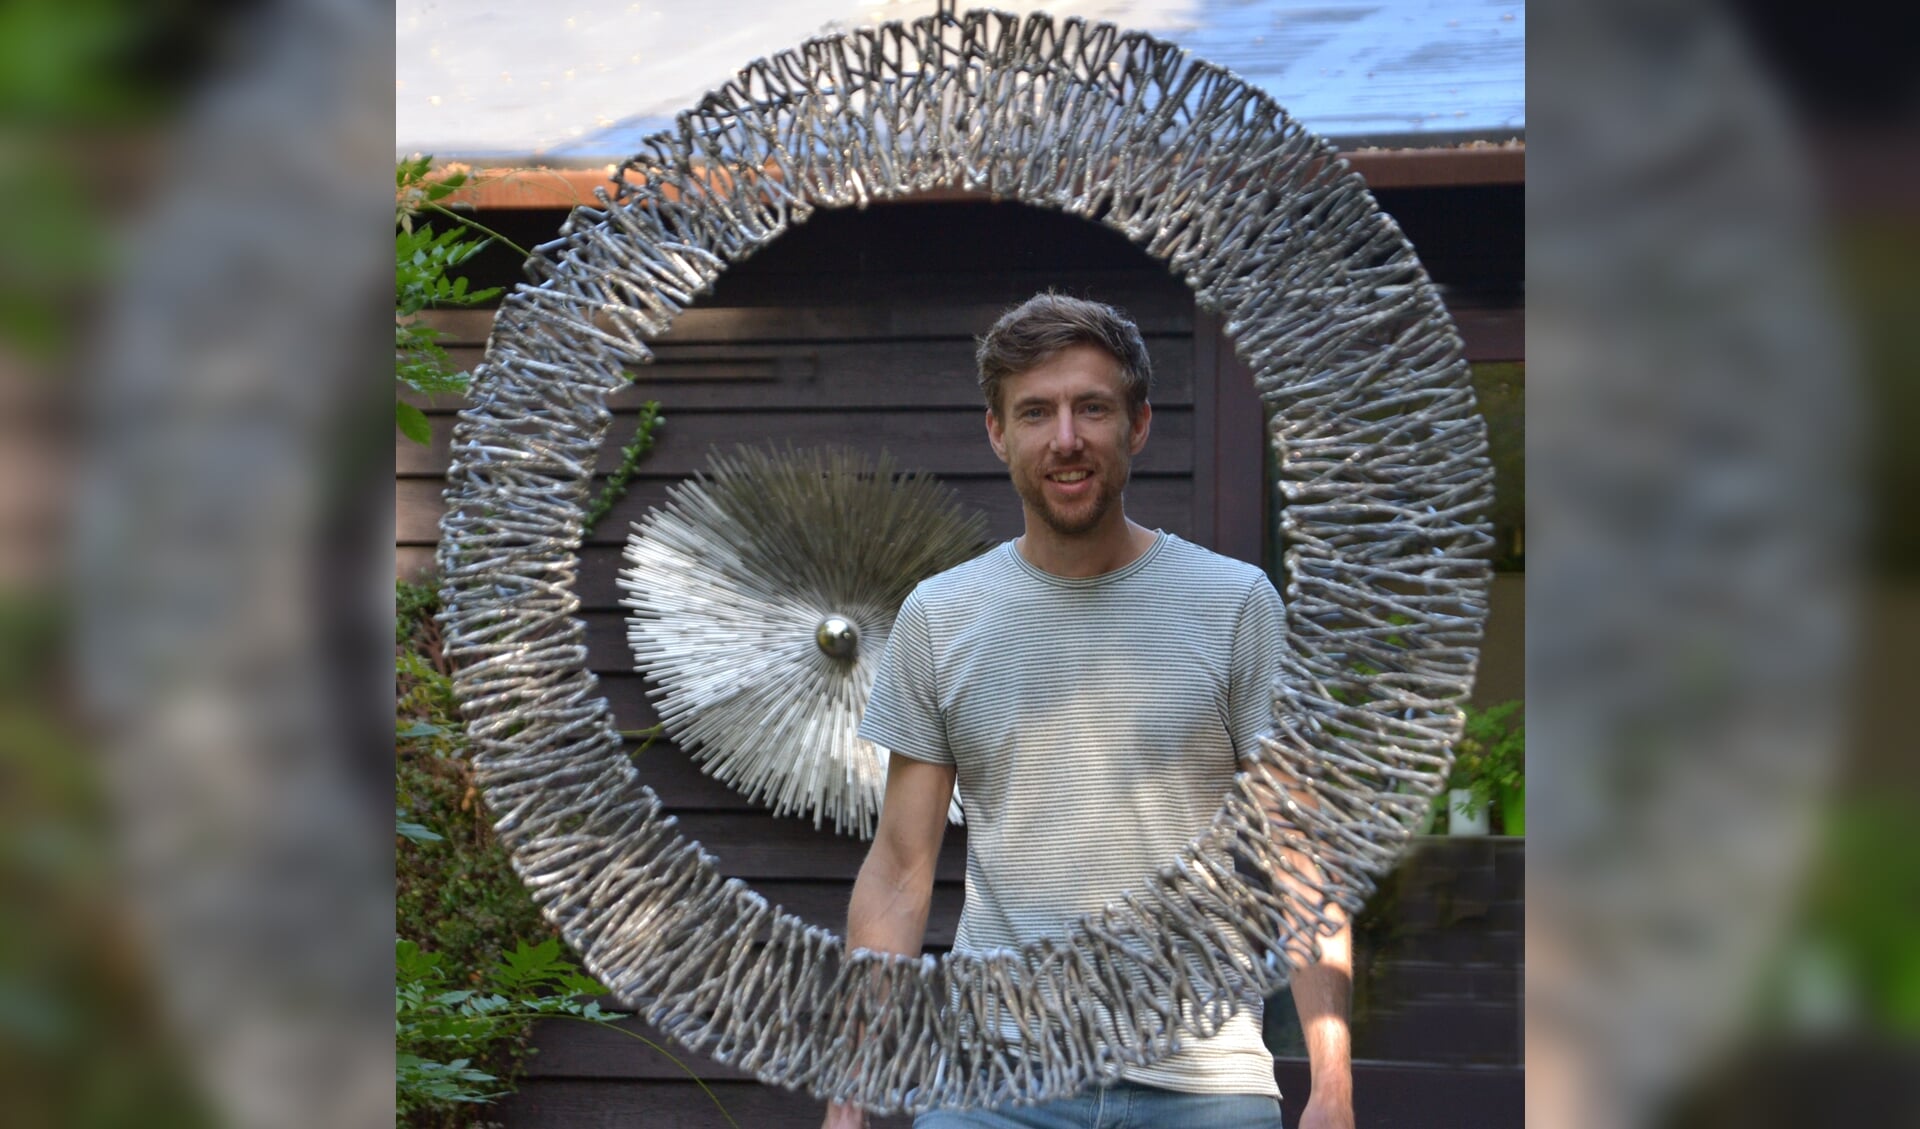 Kunstenaar Bart Lebesque met zijn exclusieve metaalkunst van hoogwaardig afvalmetaal. (foto: Henk Lunenburg)